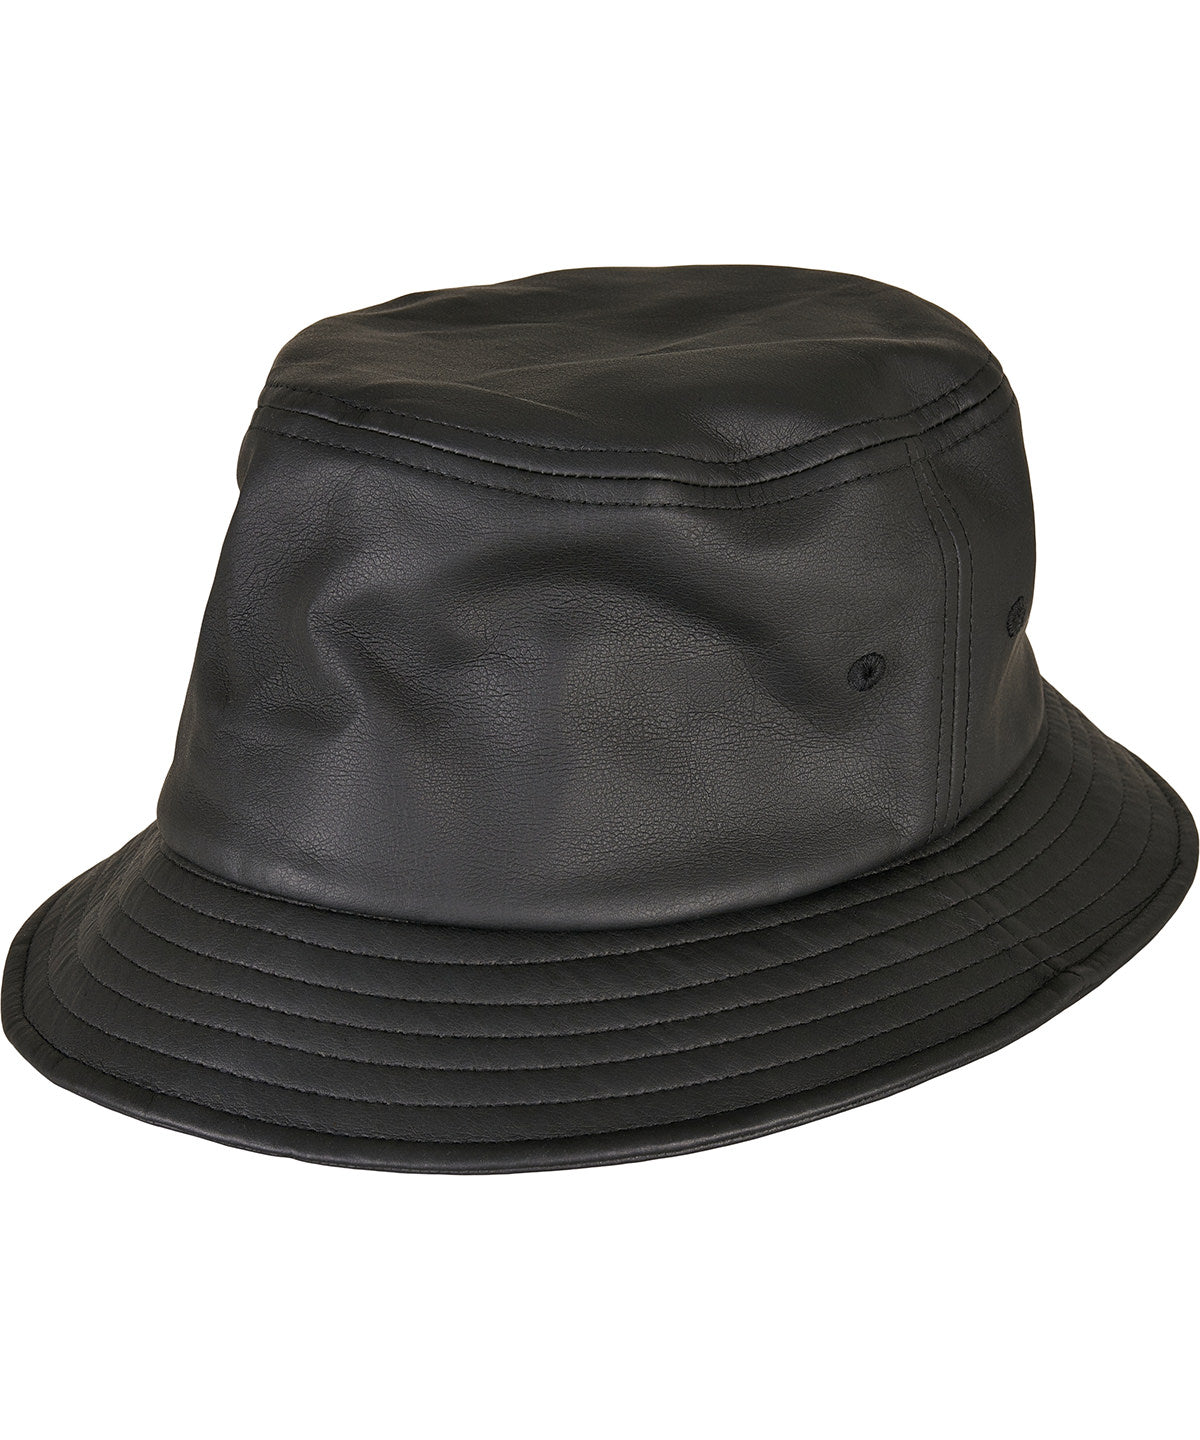 Húfur - Imitation Leather Bucket Hat (5003IL)